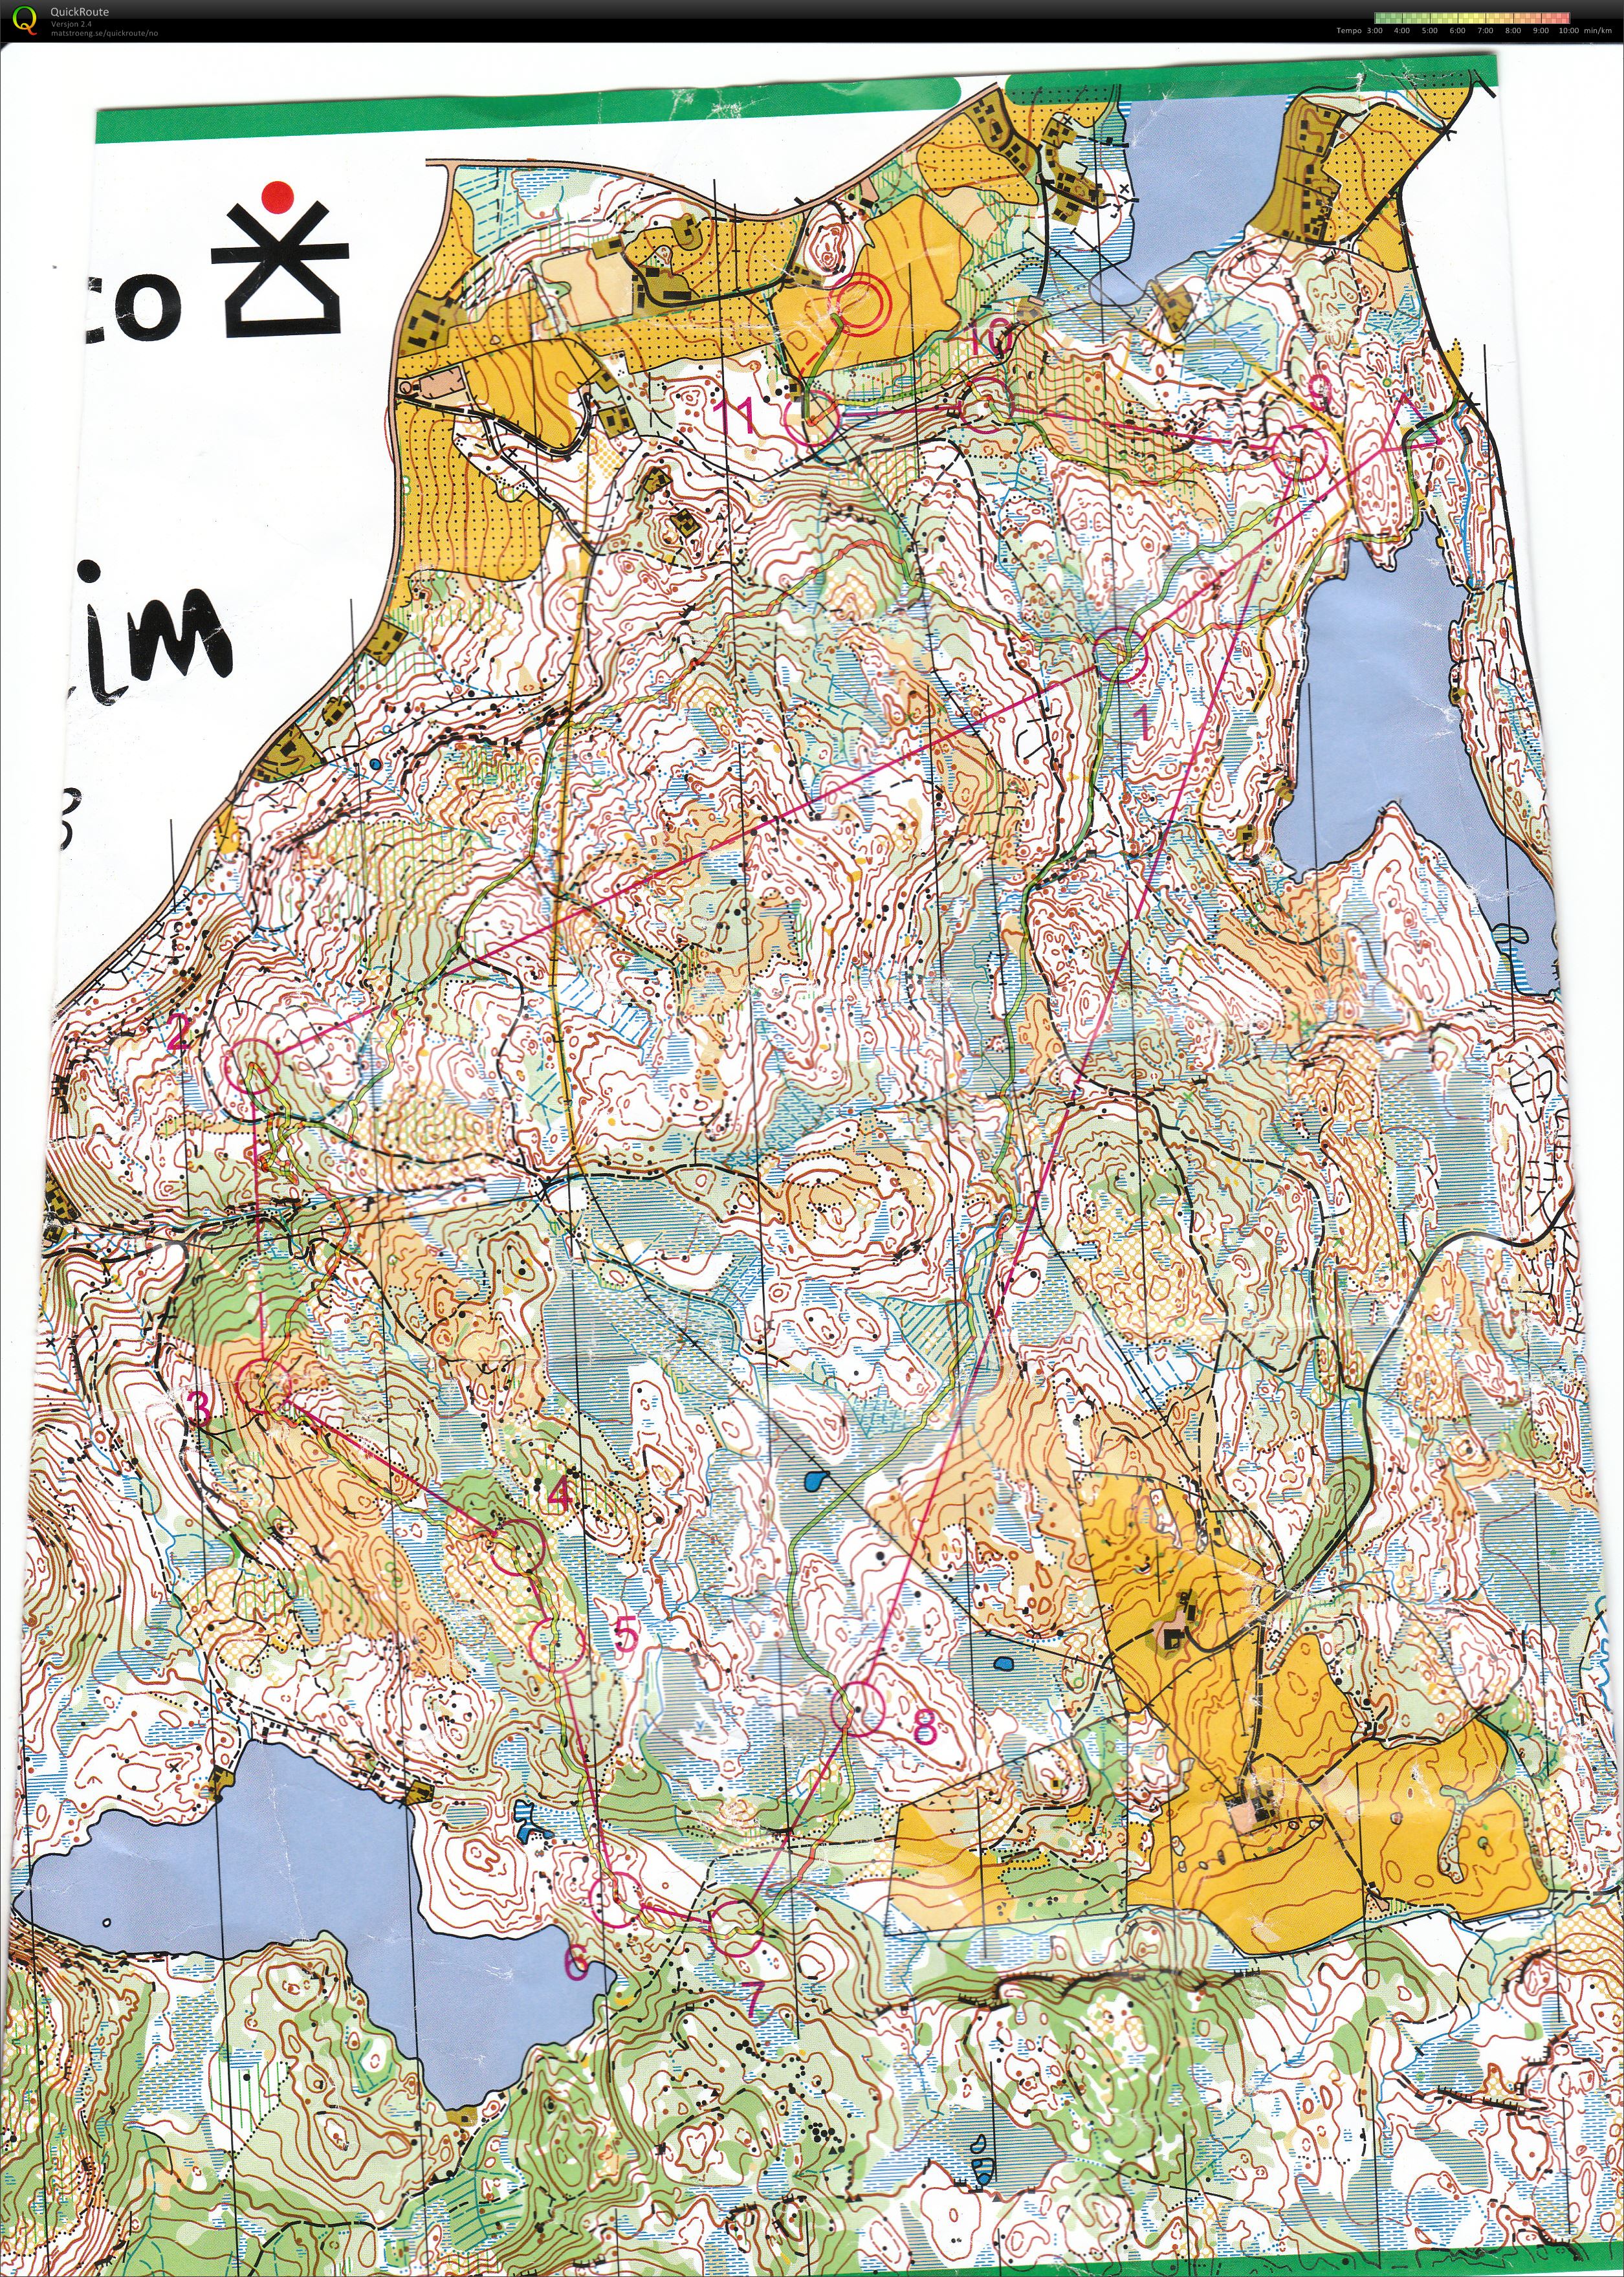 Tour de Trondheim Lang (2013-09-08)